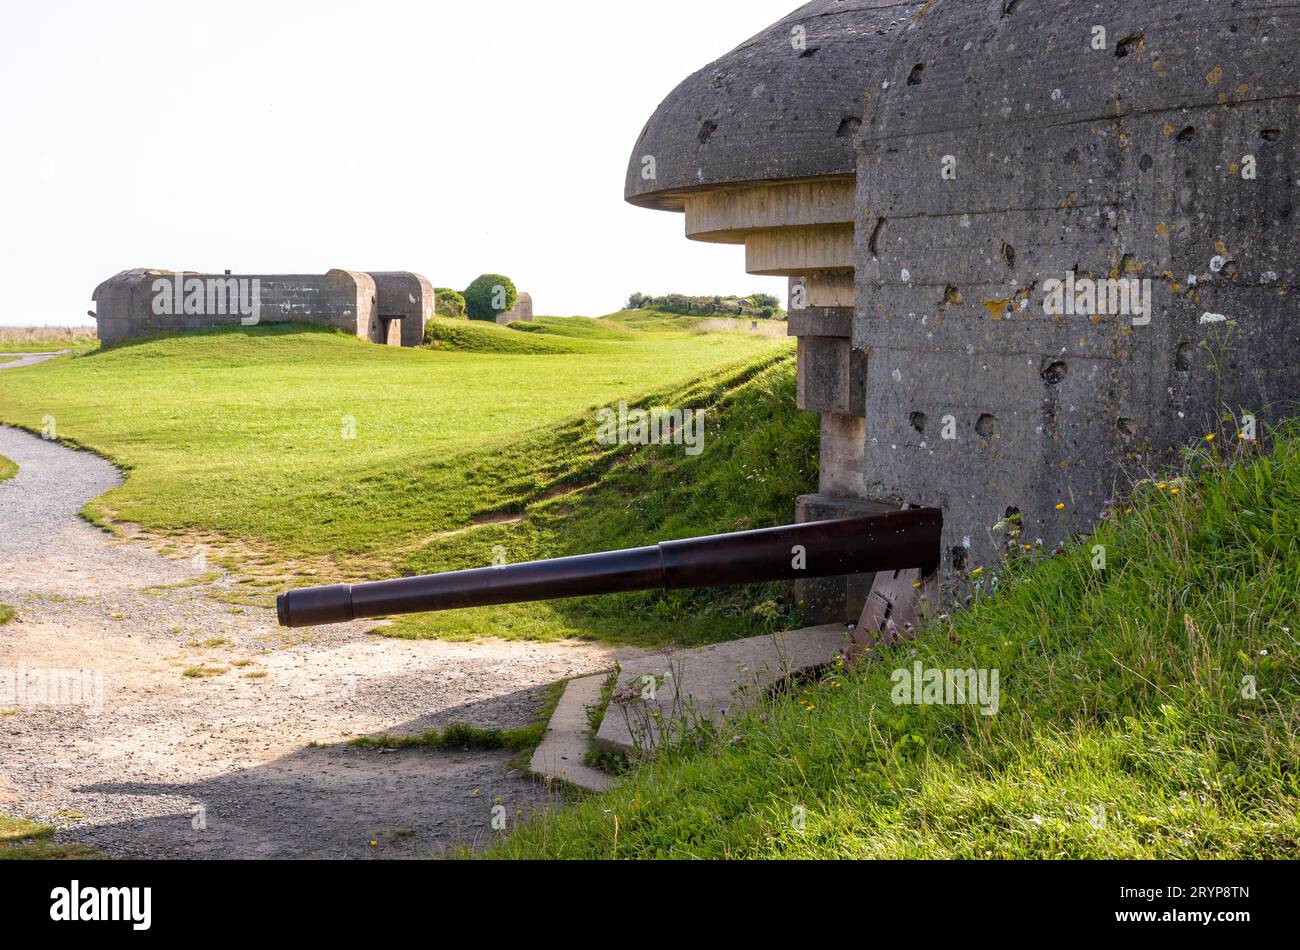 Zwei Bunker, die eine 150-mm-Kanone in der Longues-sur-Mer-Batterie in der Normandie halten, eine deutsche Küstenartillerie-Batterie aus dem Zweiten Weltkrieg, die Teil der Atlantischen Mauer ist. Stockfoto